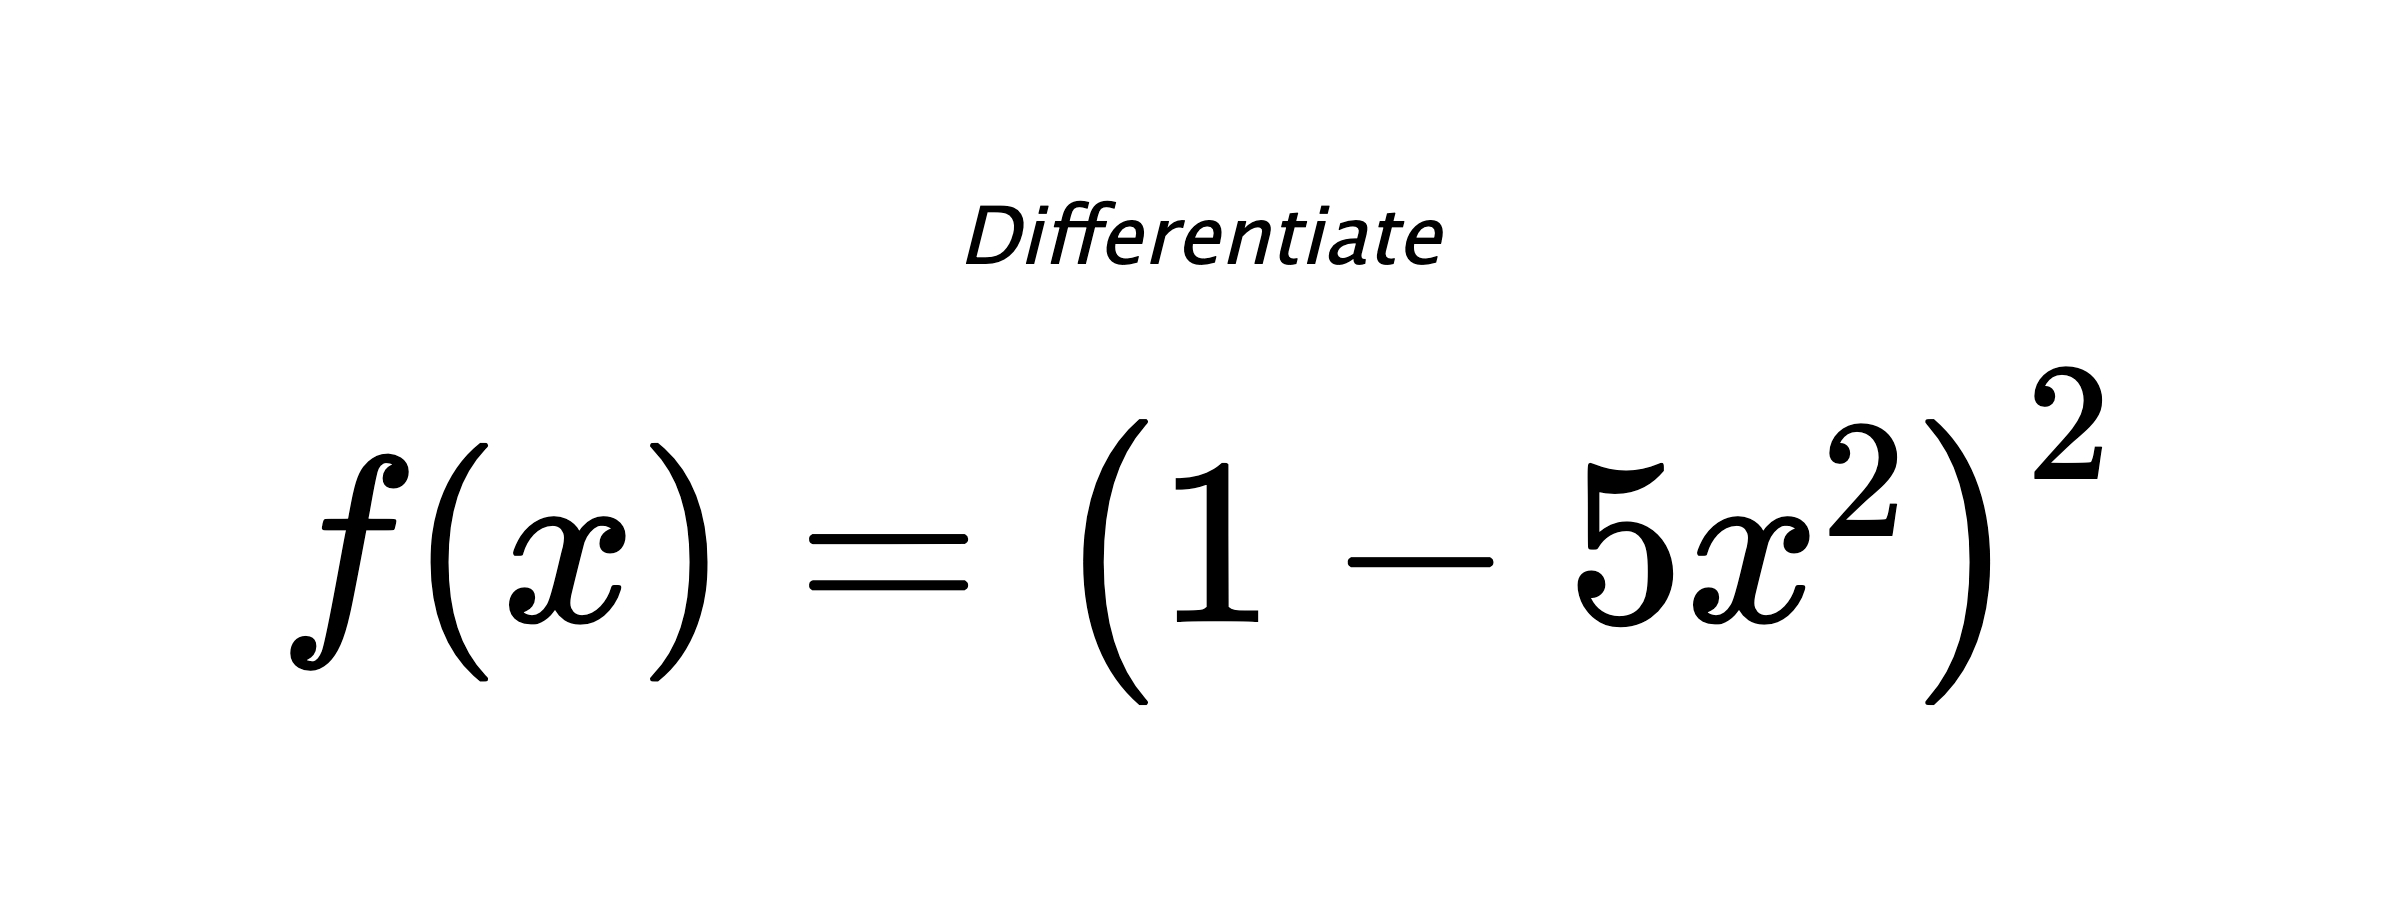 Differentiate $ f(x) = \left(1 - 5 x^{2}\right)^{2} $